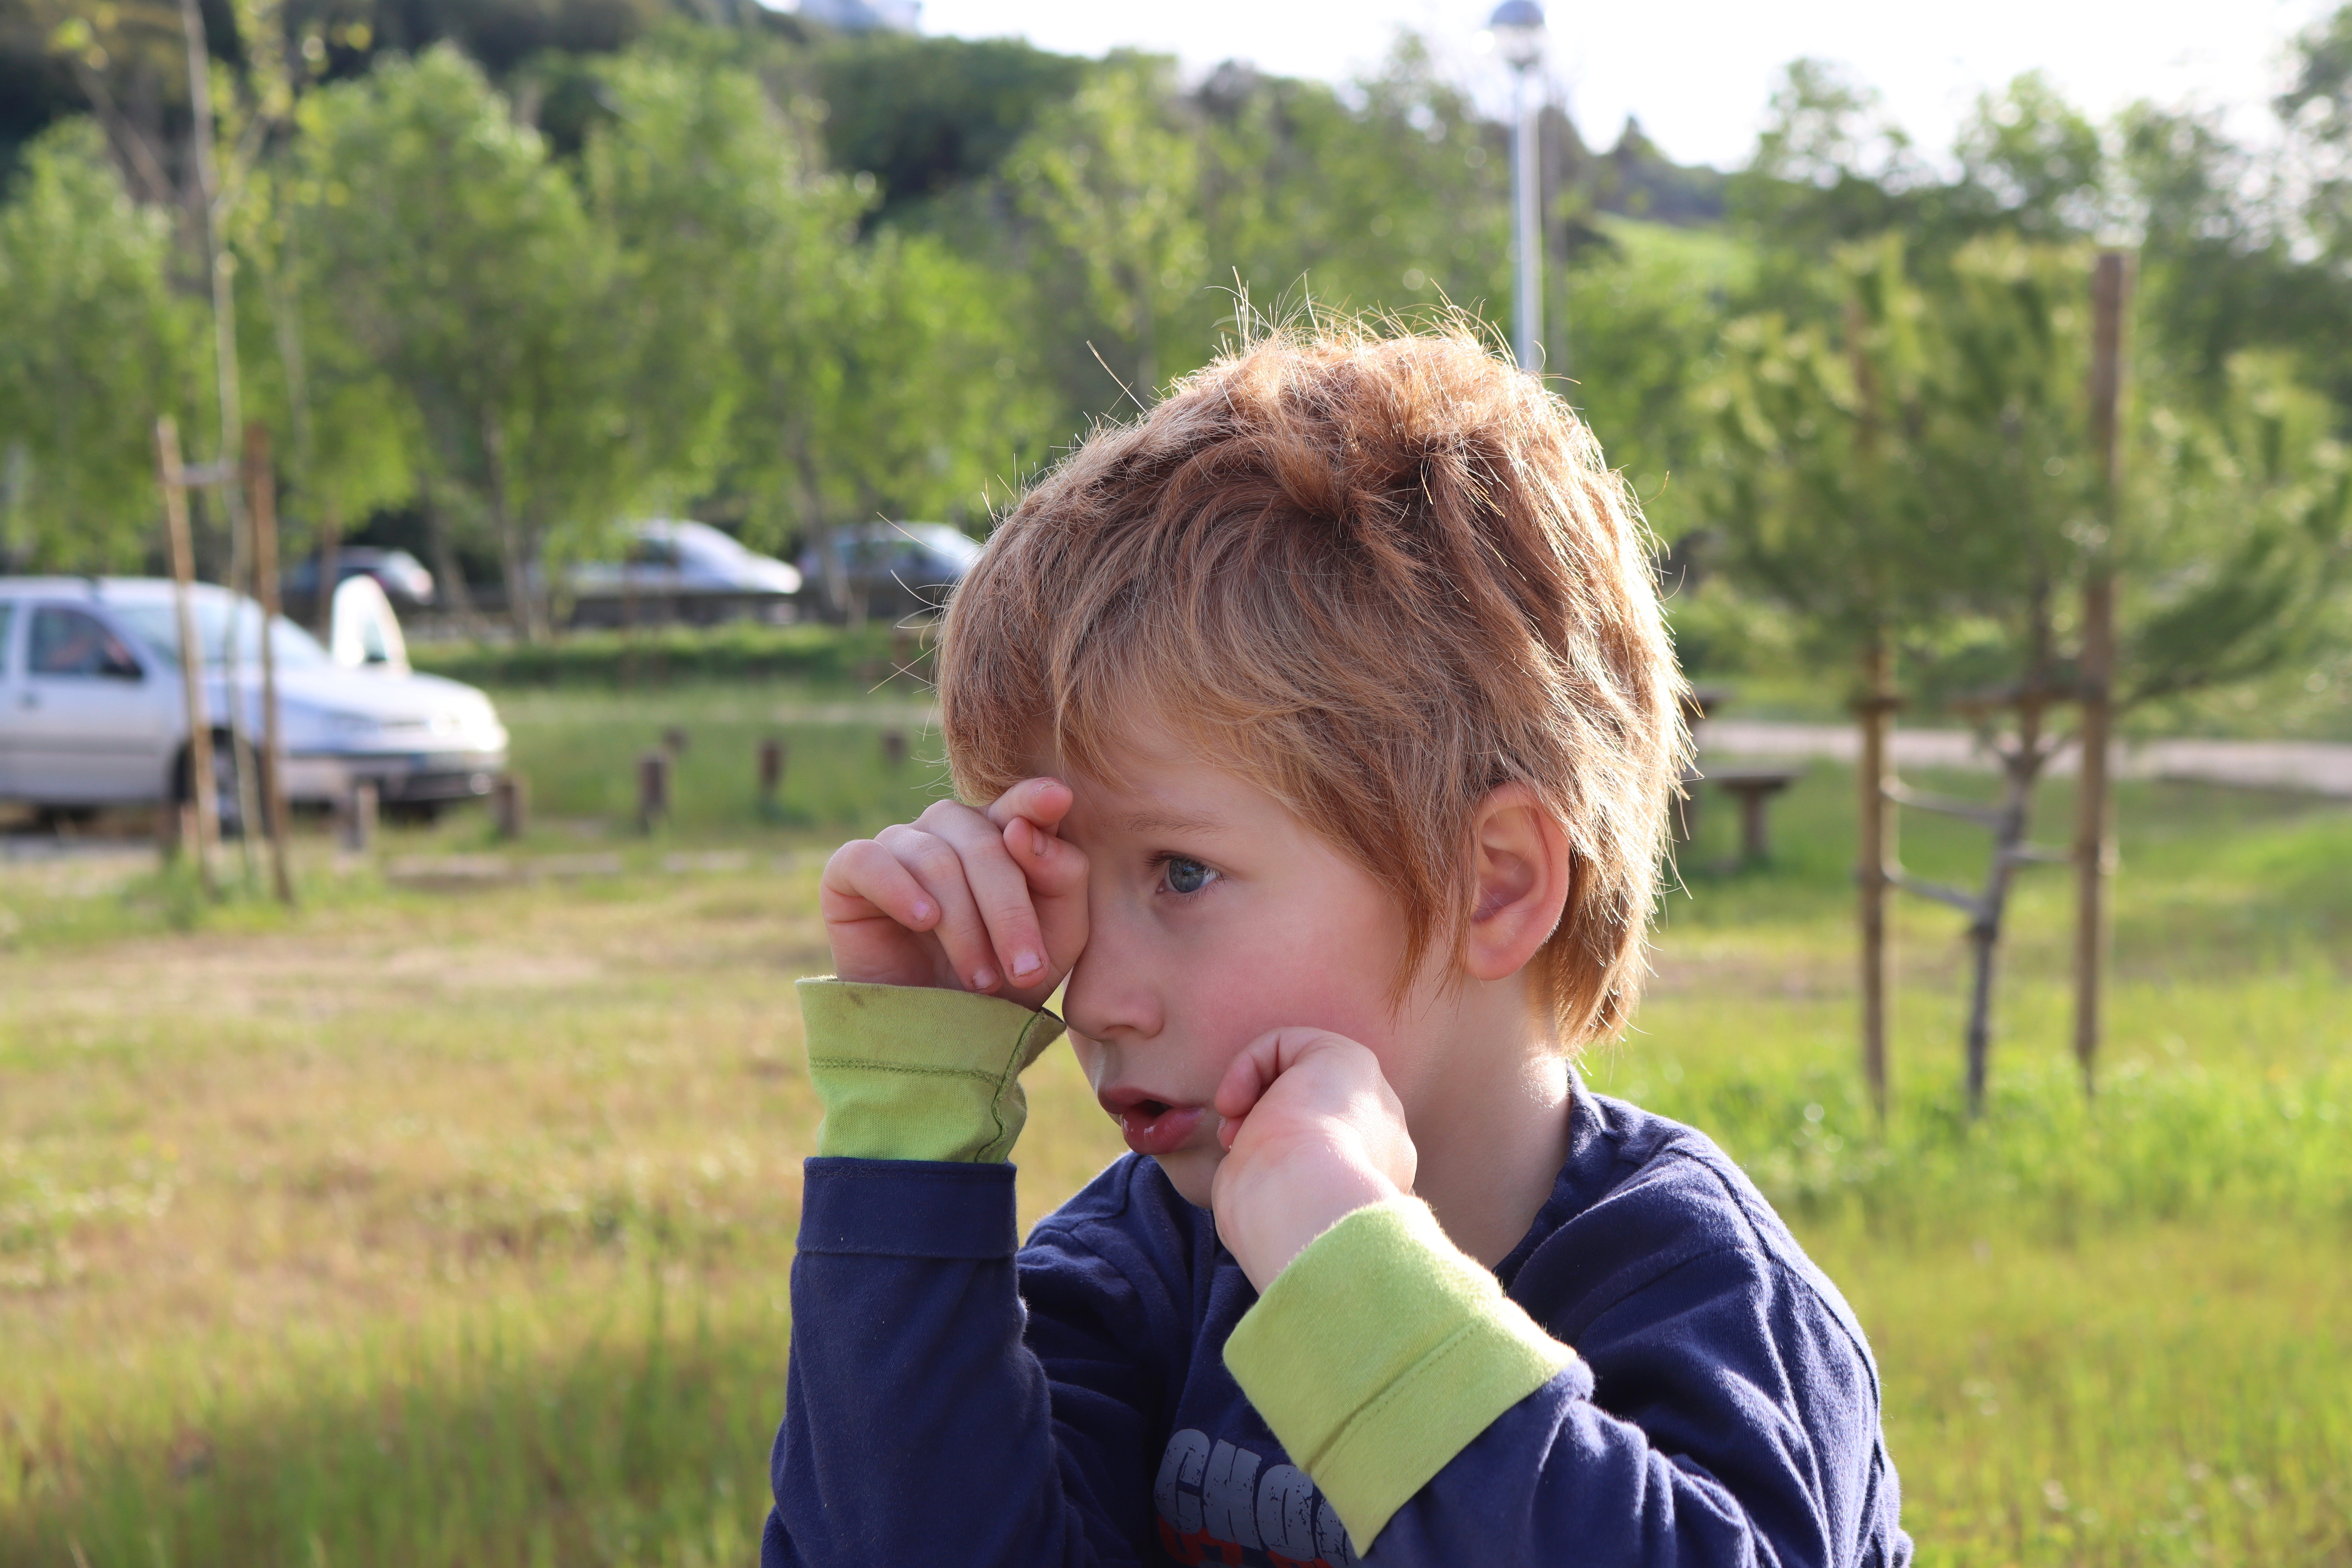 A pensive little boy | Source: Shutterstock